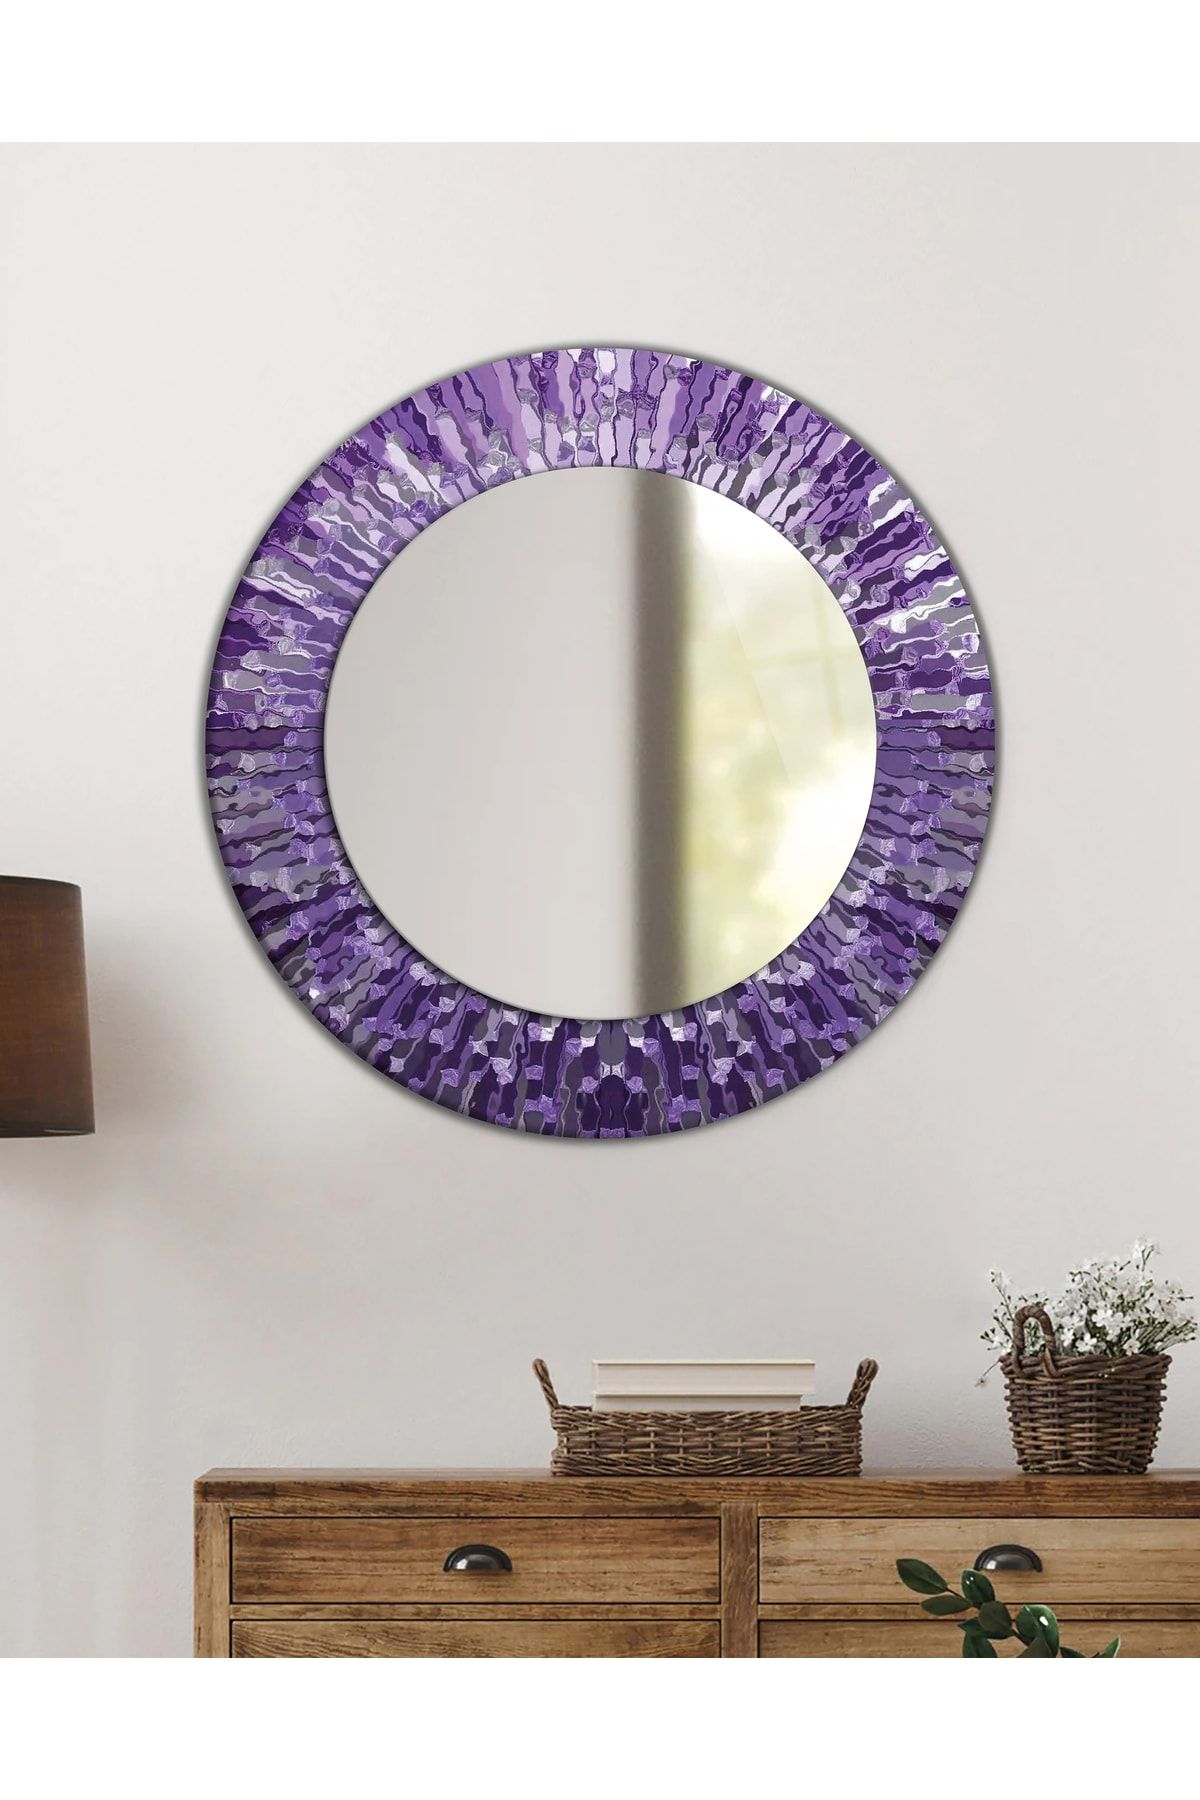 idealizbiz Desenli Duvar Aynası, Temperli Cam Kenarlı Dekoratif Ayna, Mutfak Banyo Wc Tuvalet Salon Antre Hol